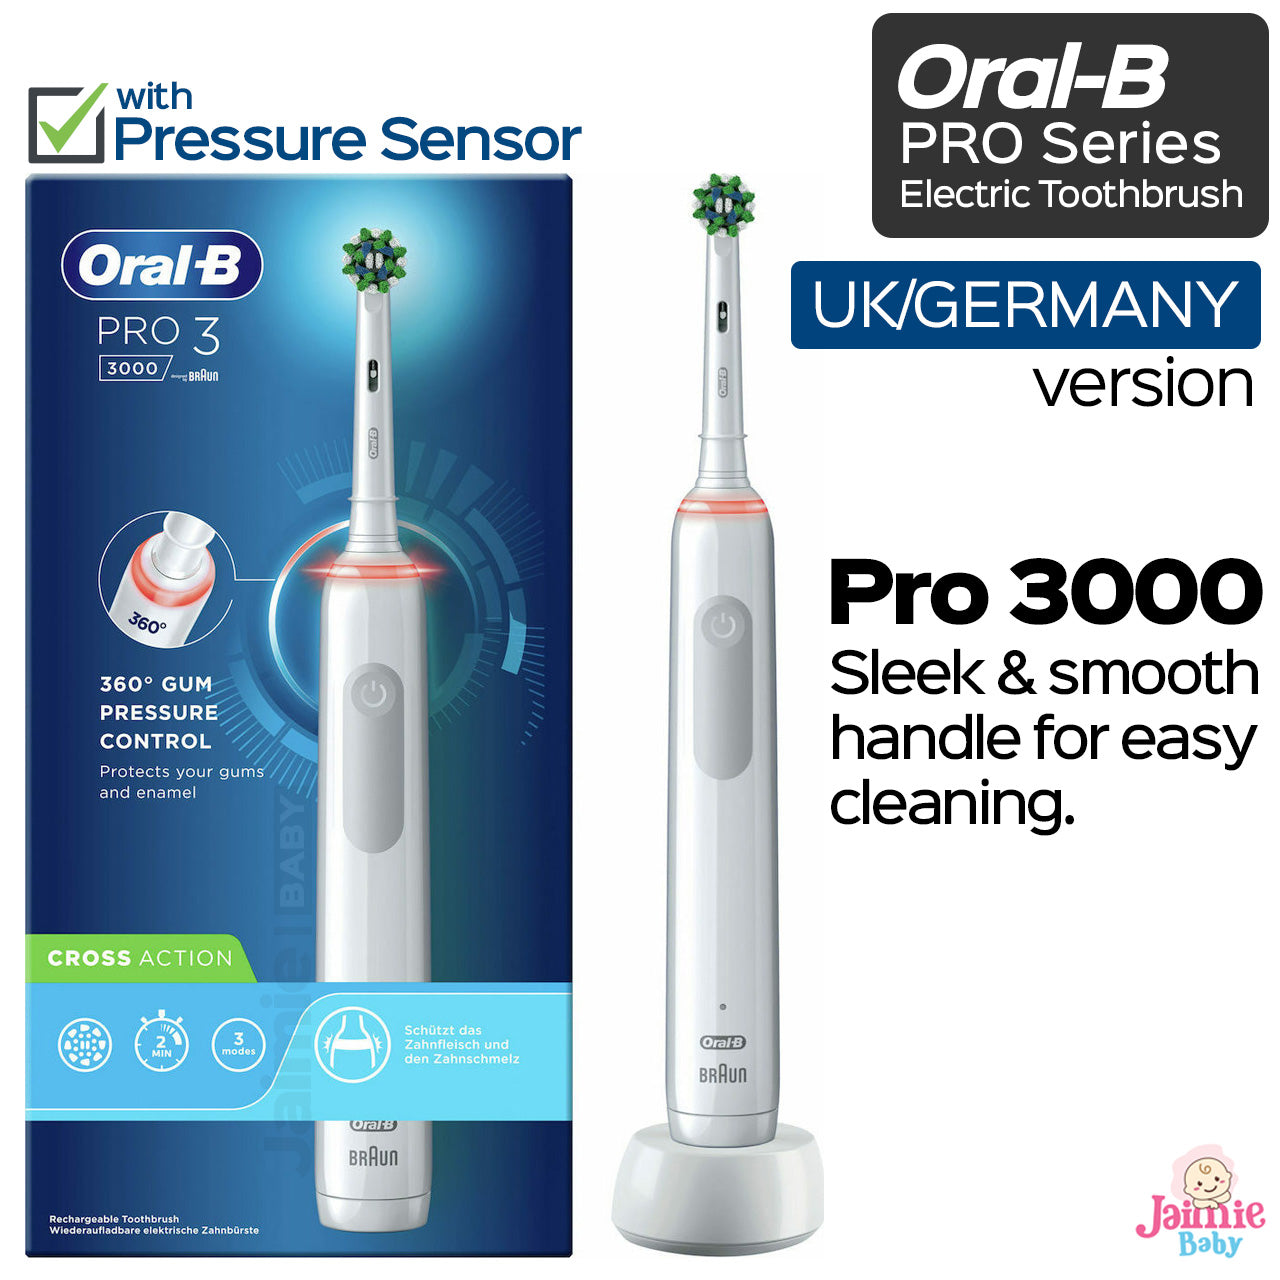 Oral-B Pro 3000  Electric Toothbrush UK/German Version